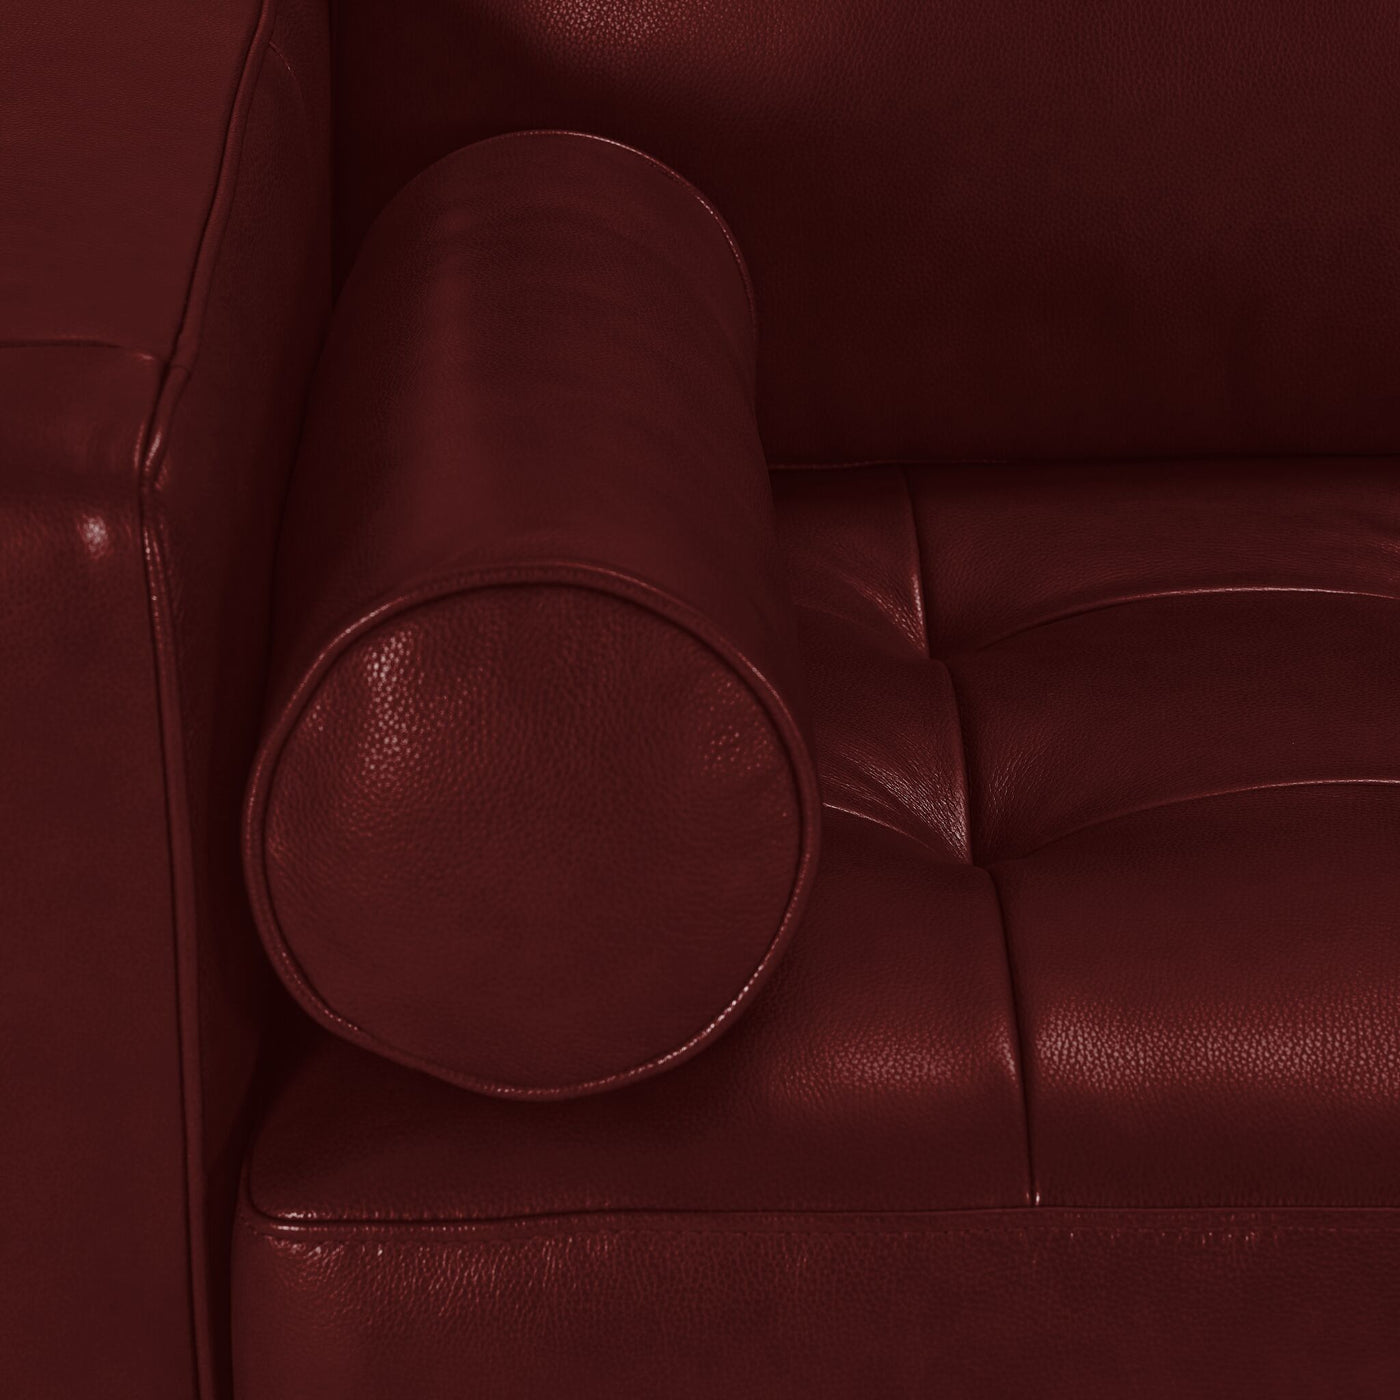 Bari Leather Sofa - Fire